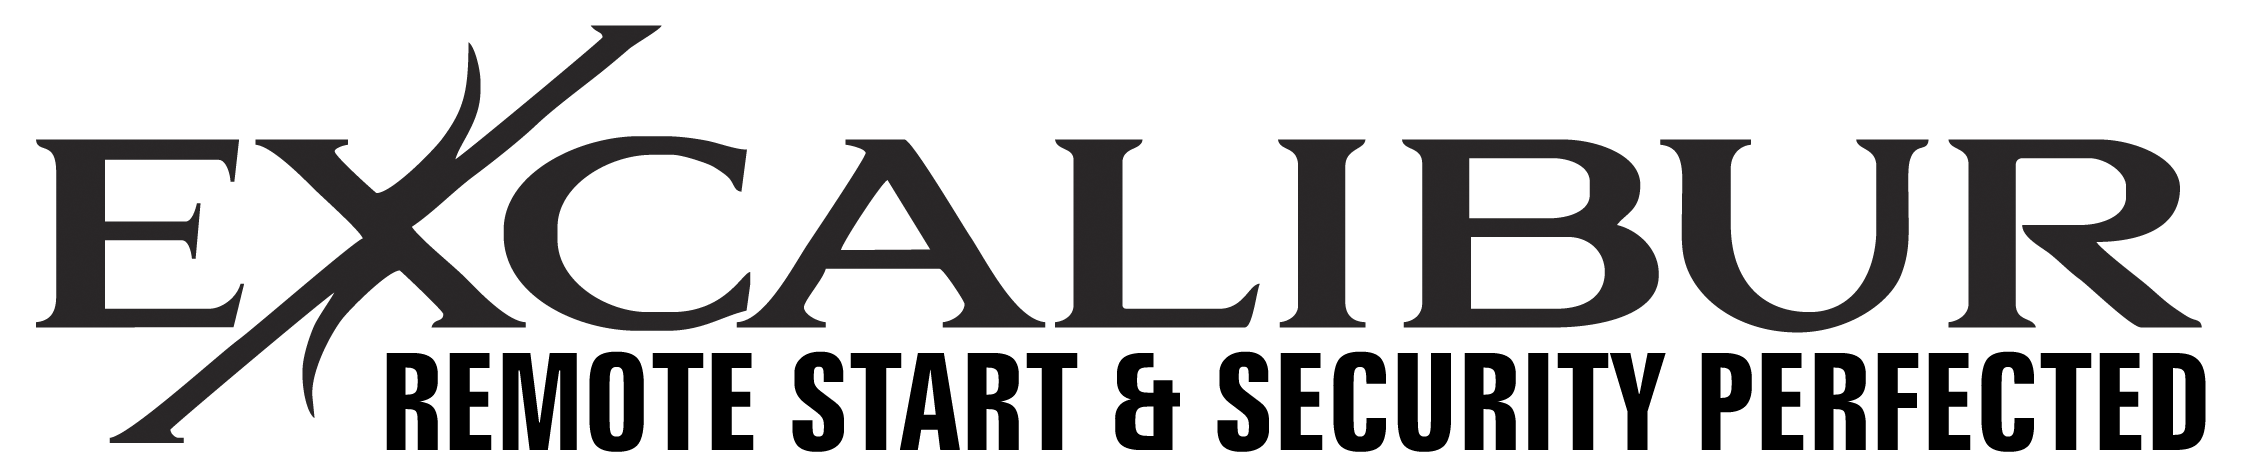 Excalibur logo